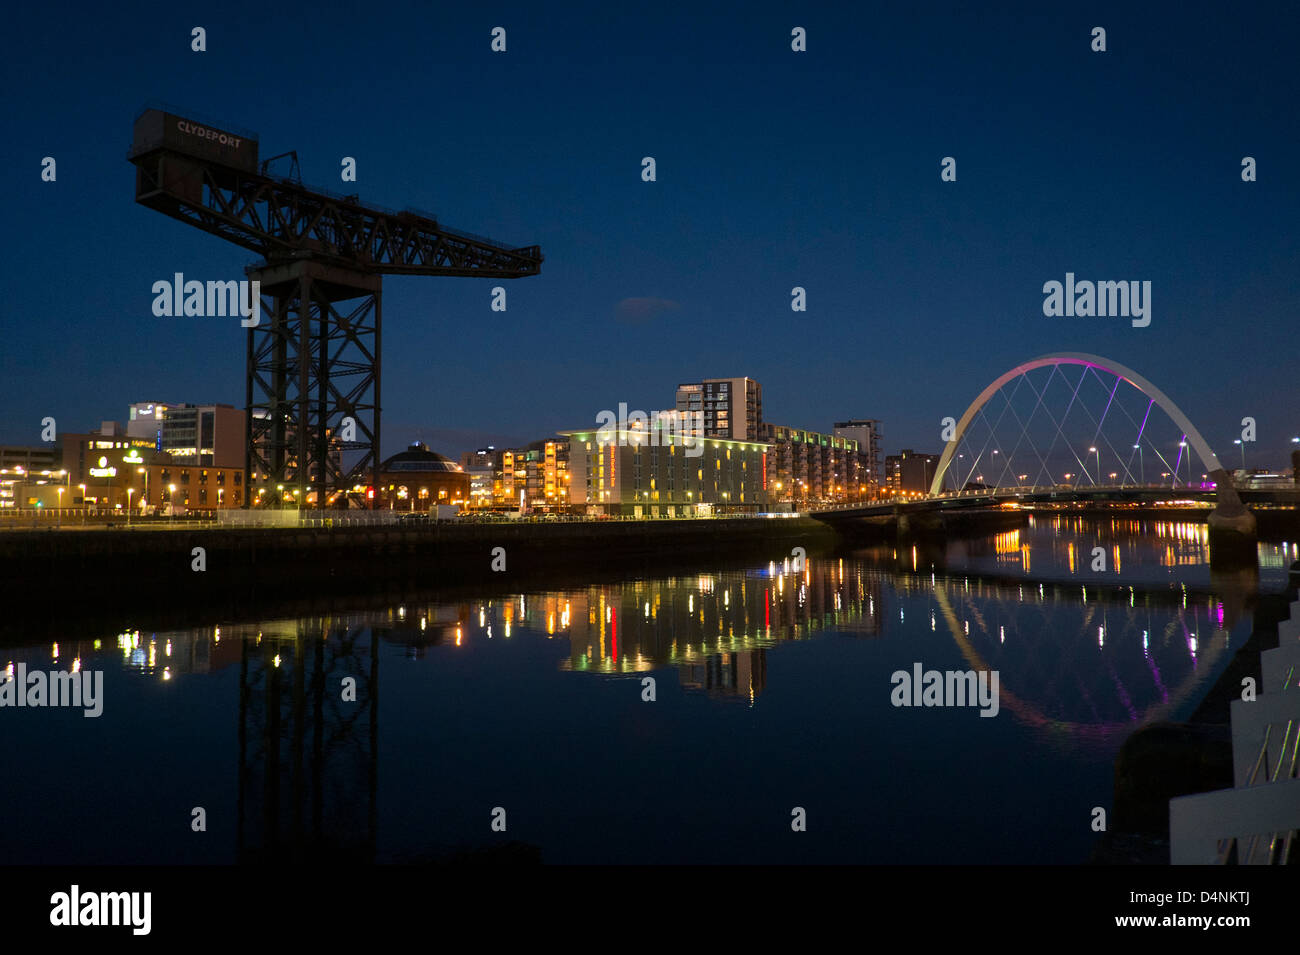 Eine Nacht Zeit Blick auf den Fluss Clyde, Clyde Arc und das Hilton Garden Inn, Glasgow Finnieston Crane zeigen Stockfoto